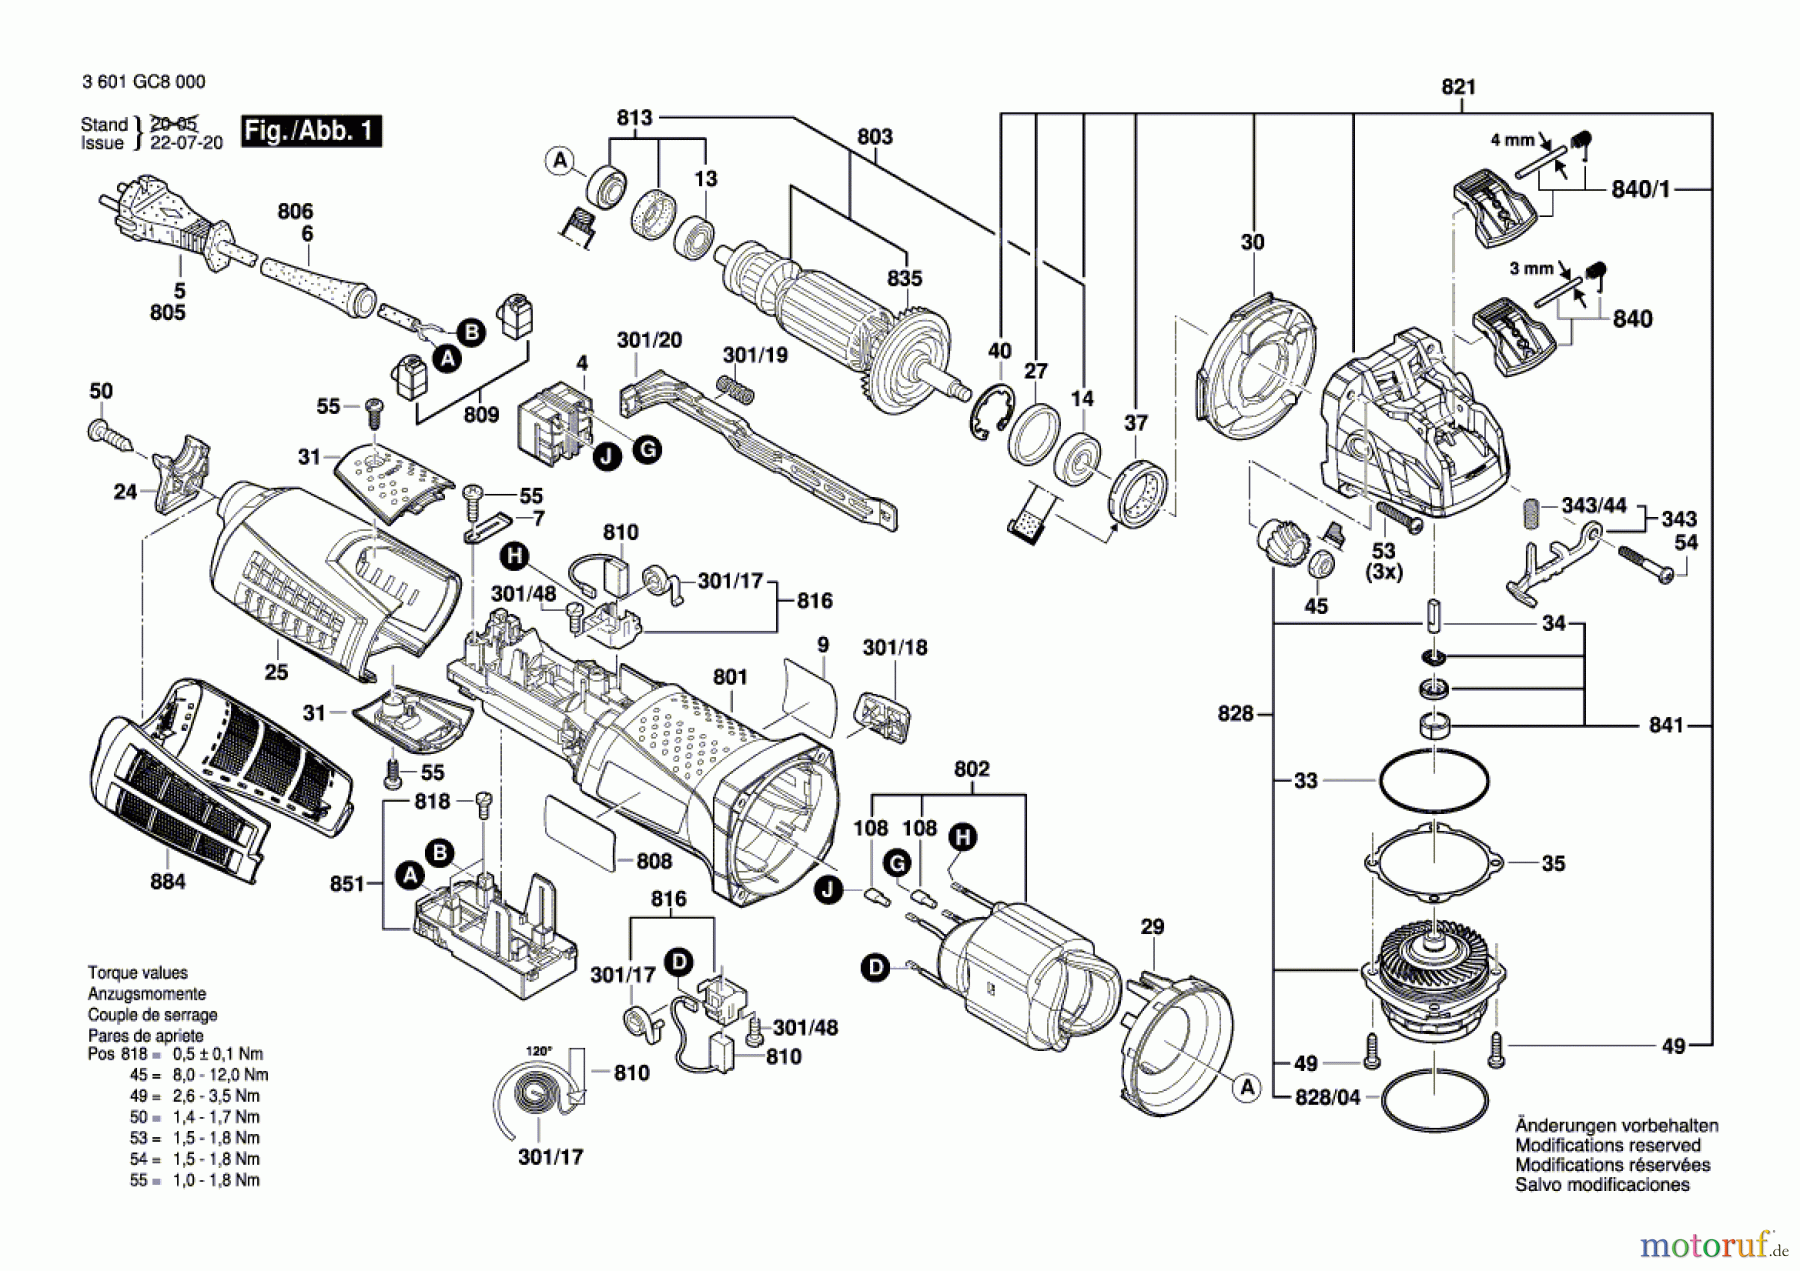  Bosch Werkzeug Winkelschleifer GWX 19-125 S Seite 1